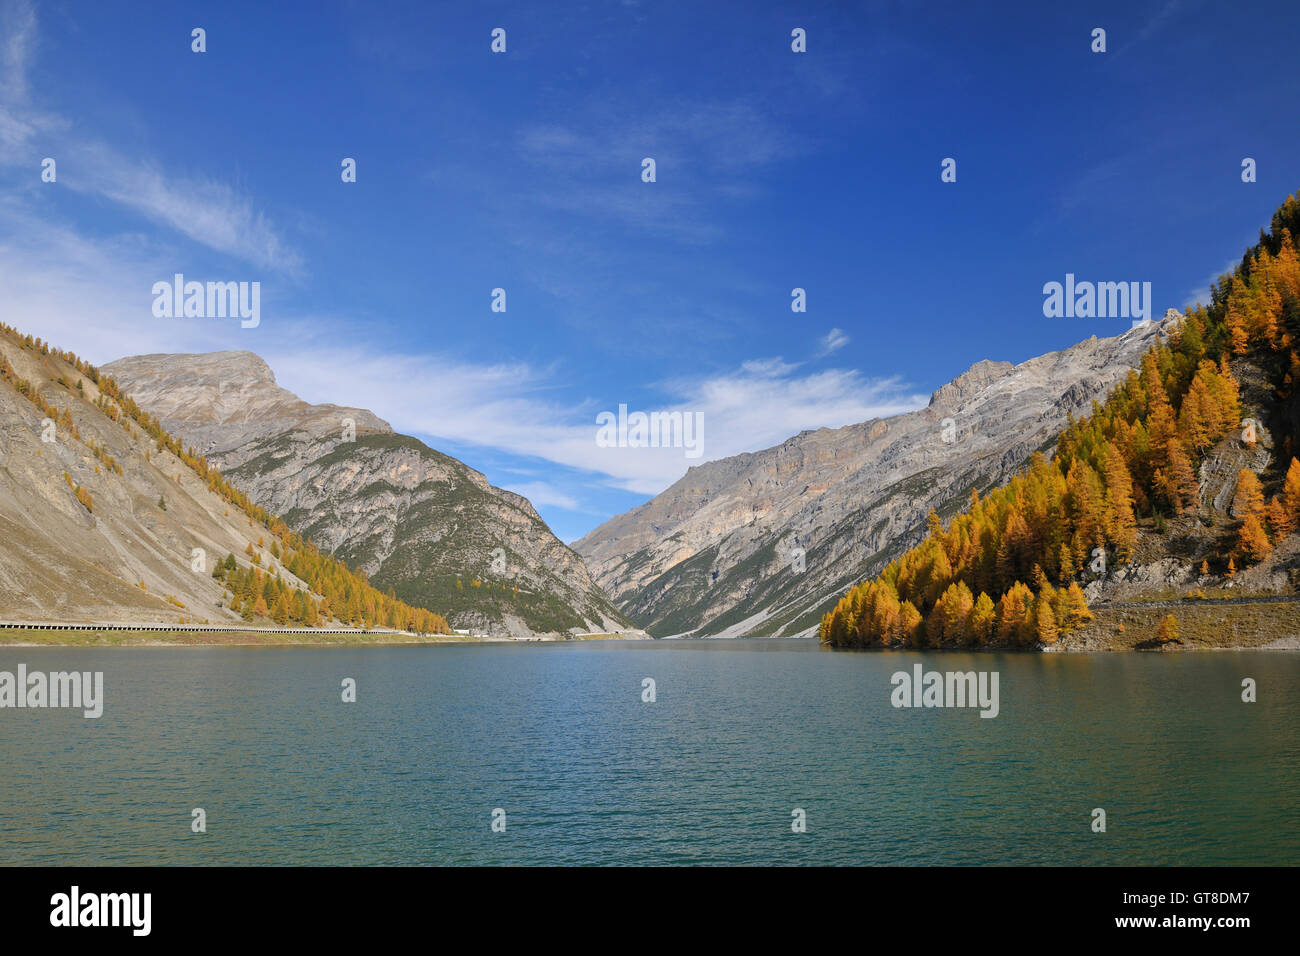 Lago di Livigno in Autumn, Livigno, Province of Sondrio, Lombary, Italy Stock Photo